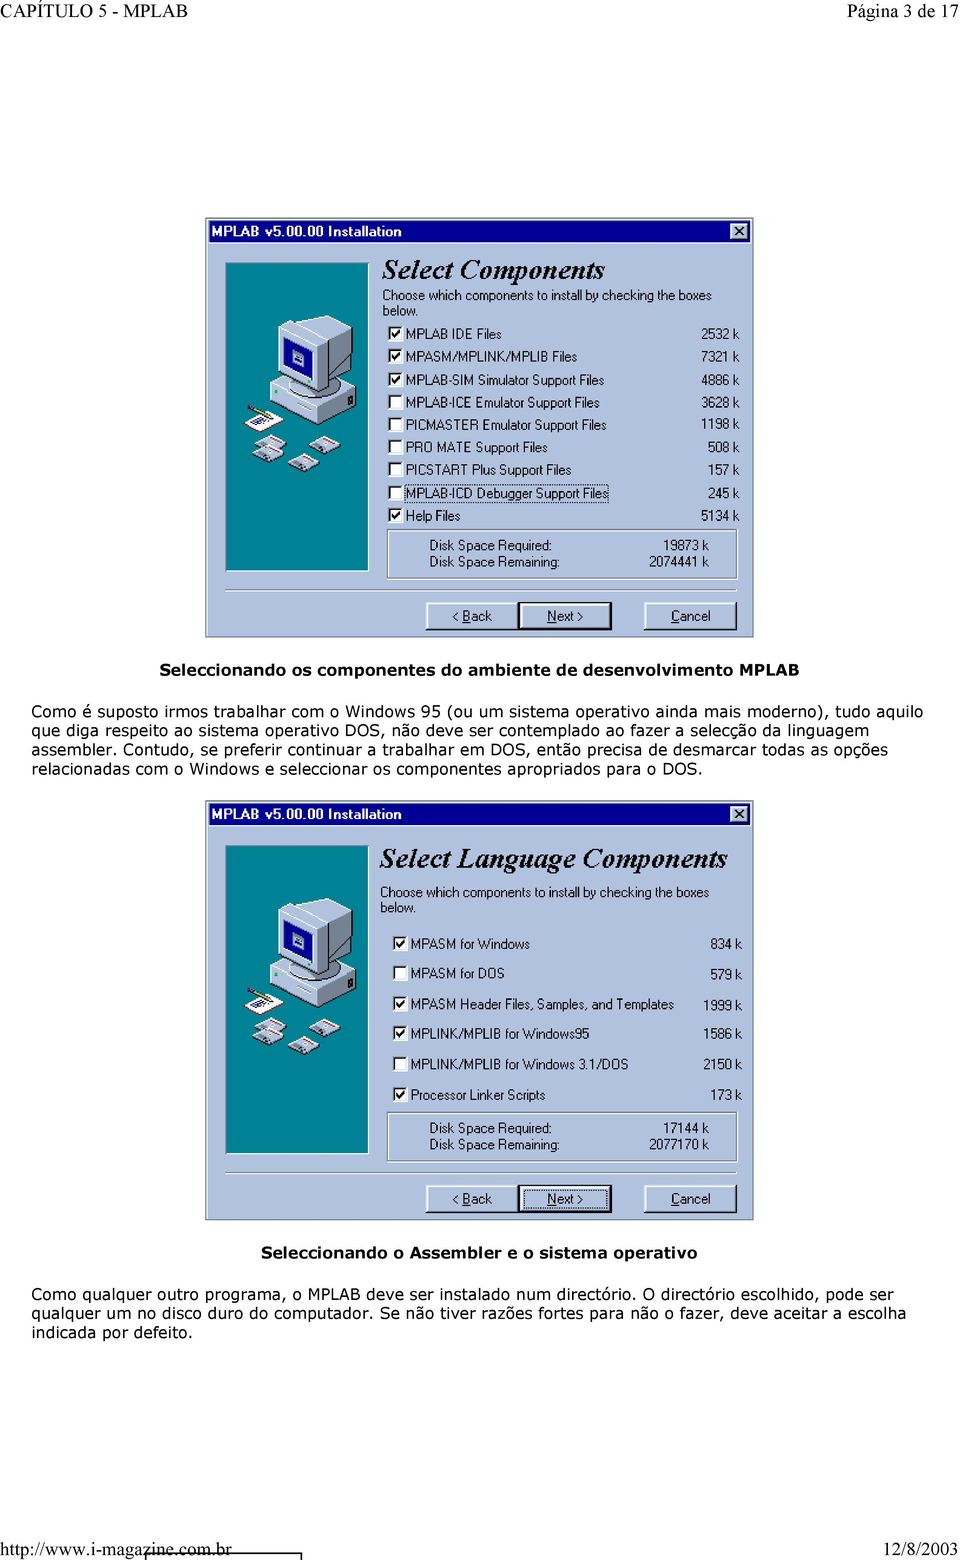 Contudo, se preferir continuar a trabalhar em DOS, então precisa de desmarcar todas as opções relacionadas com o Windows e seleccionar os componentes apropriados para o DOS.